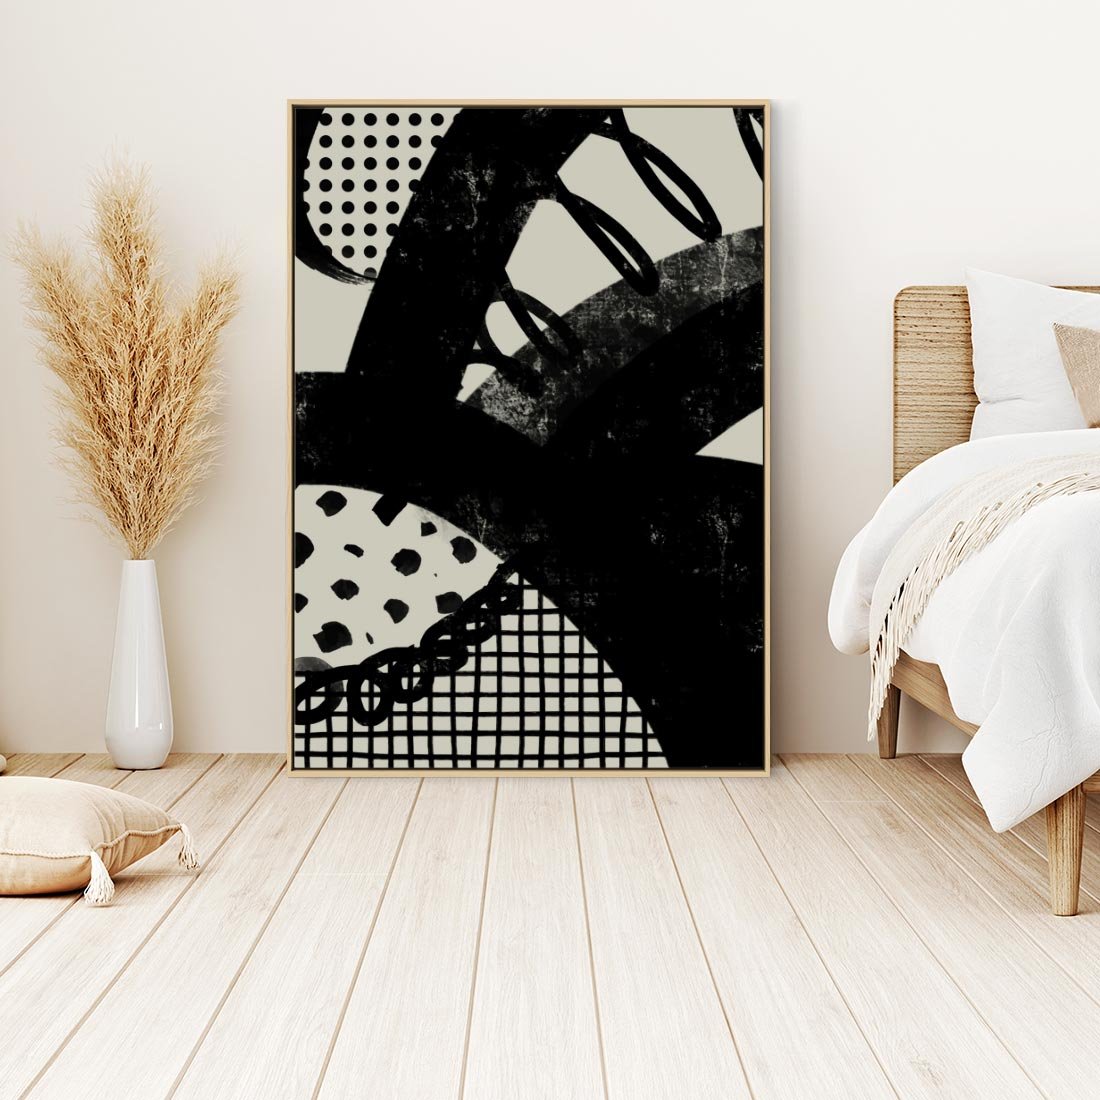 Obraz w ramie 50x70 - Nieznanie Zaskoczenia - bstrakcyjna mroczna kompozycja, nieregularne - rama drewno